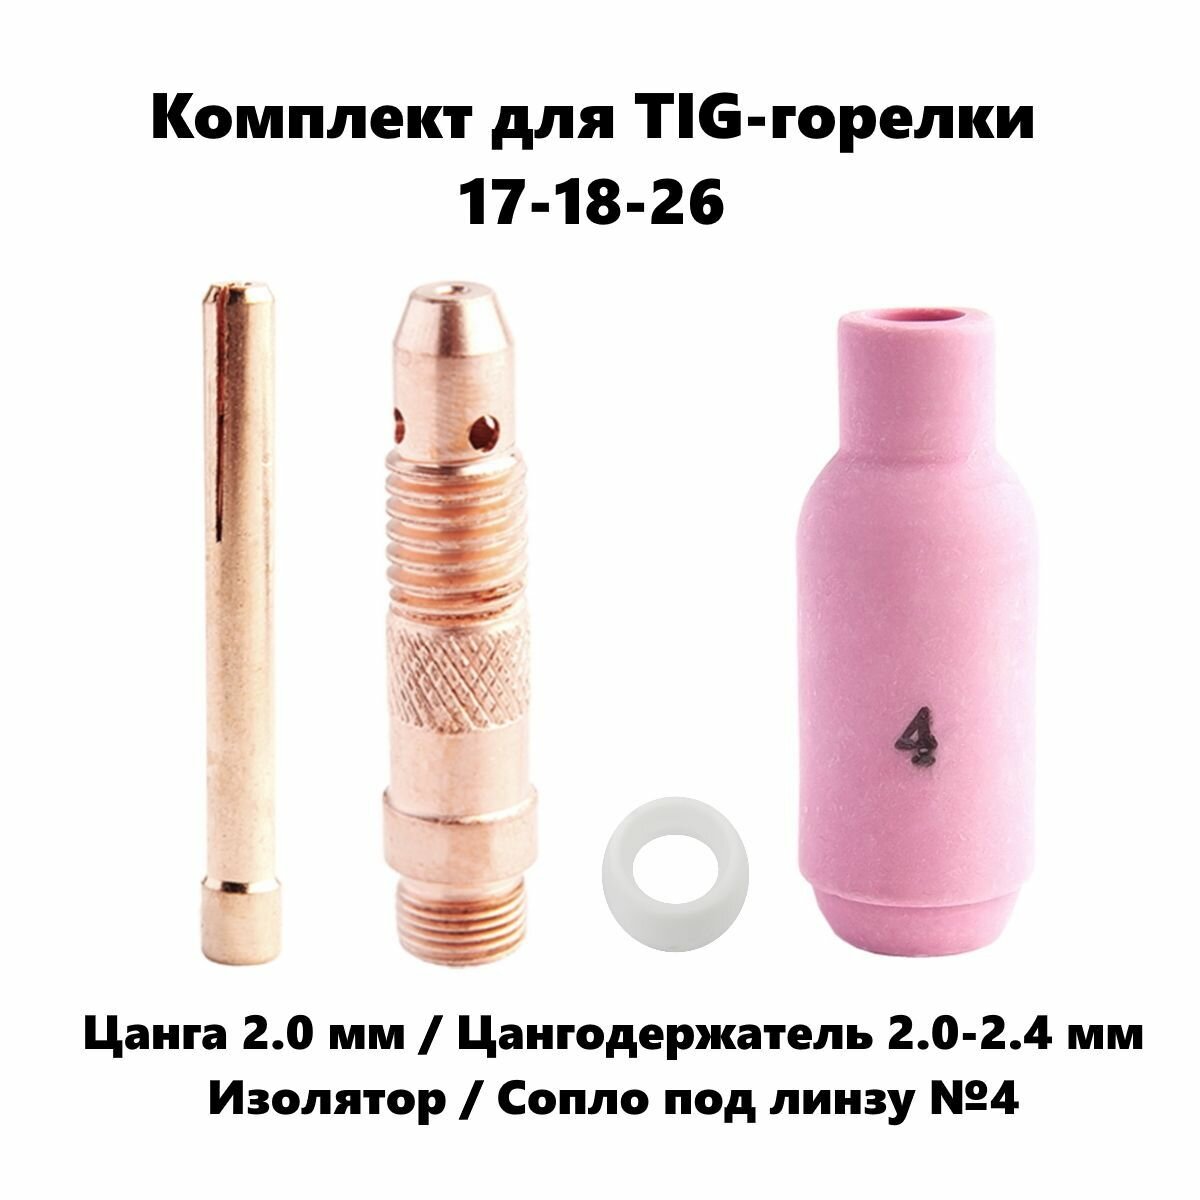 Набор 2.0 мм цанга Сопло керамическое №4 цангодержатель изолятор для TIG горелки (17-18-26)